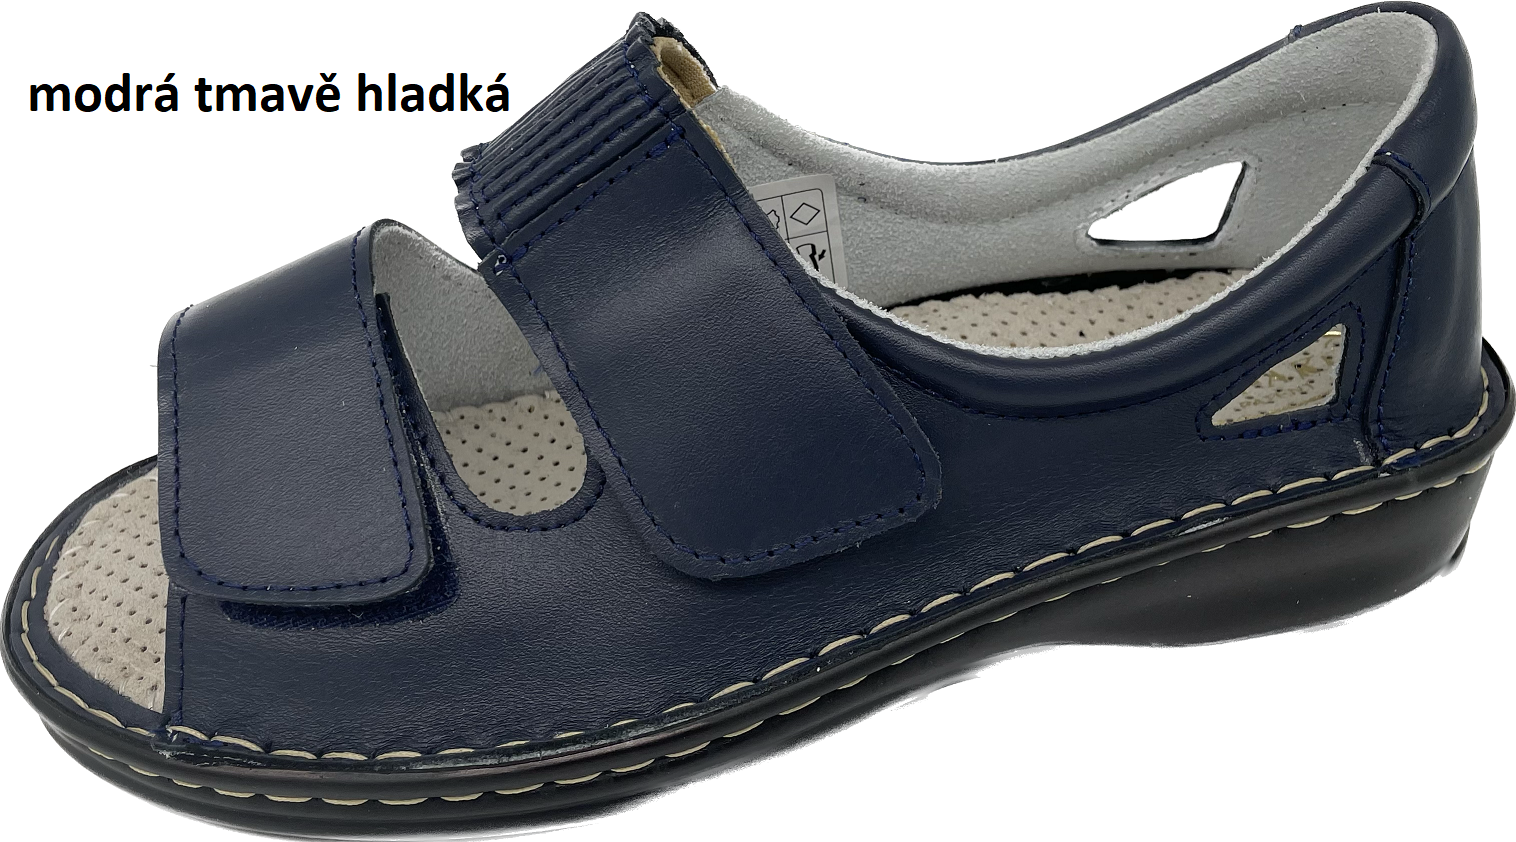 Boty Hanák vzor 306 - černá podešev Barva usně: modrá tmavě hladká, Velikosti obuvi: 35